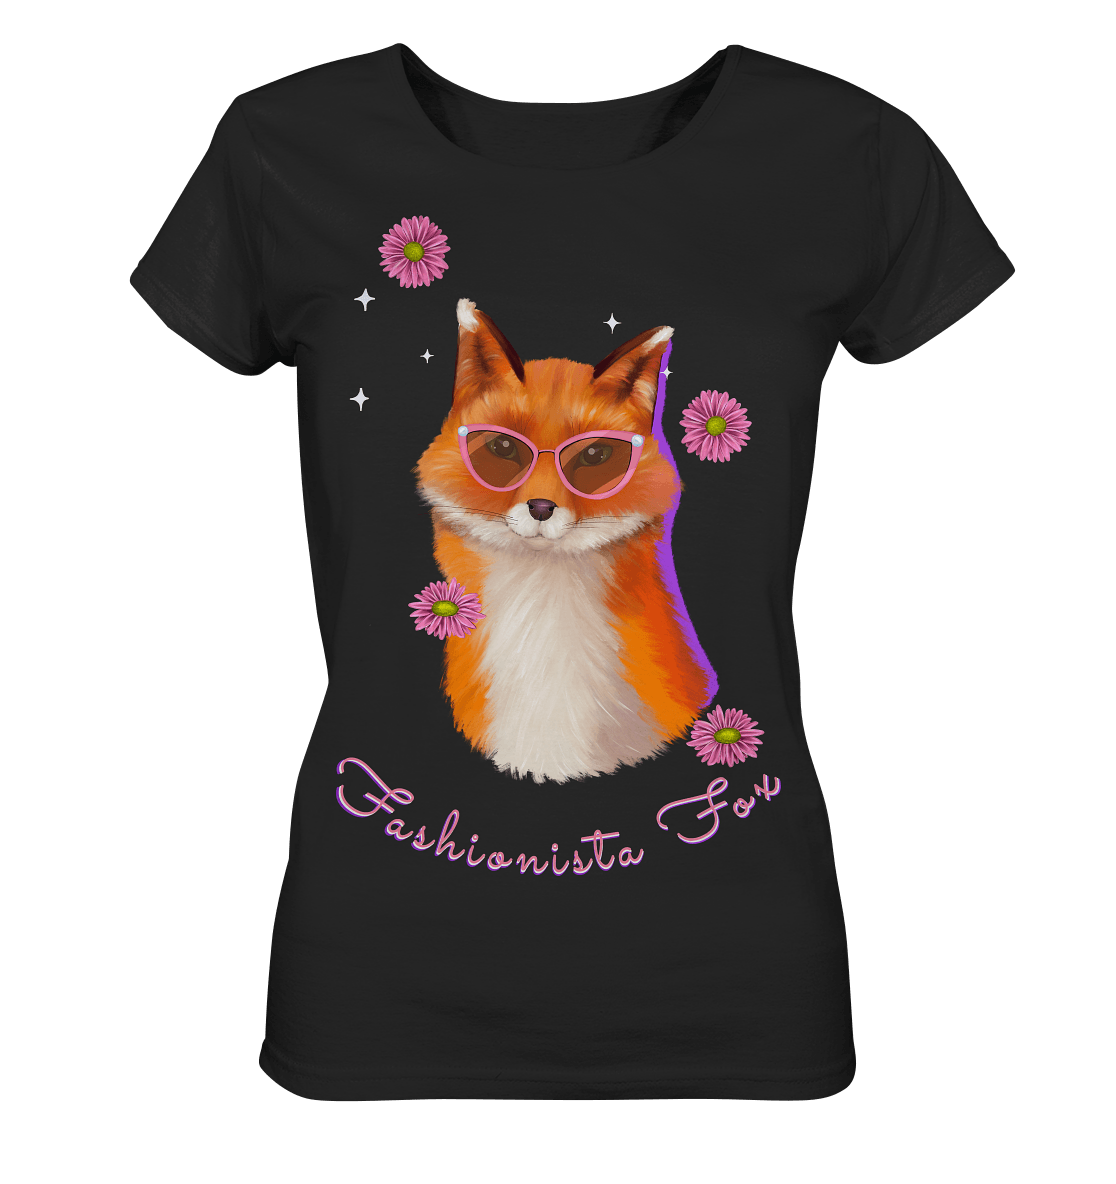 Fuchs mit Blumen T-Shirt in schwarz fashionista fox